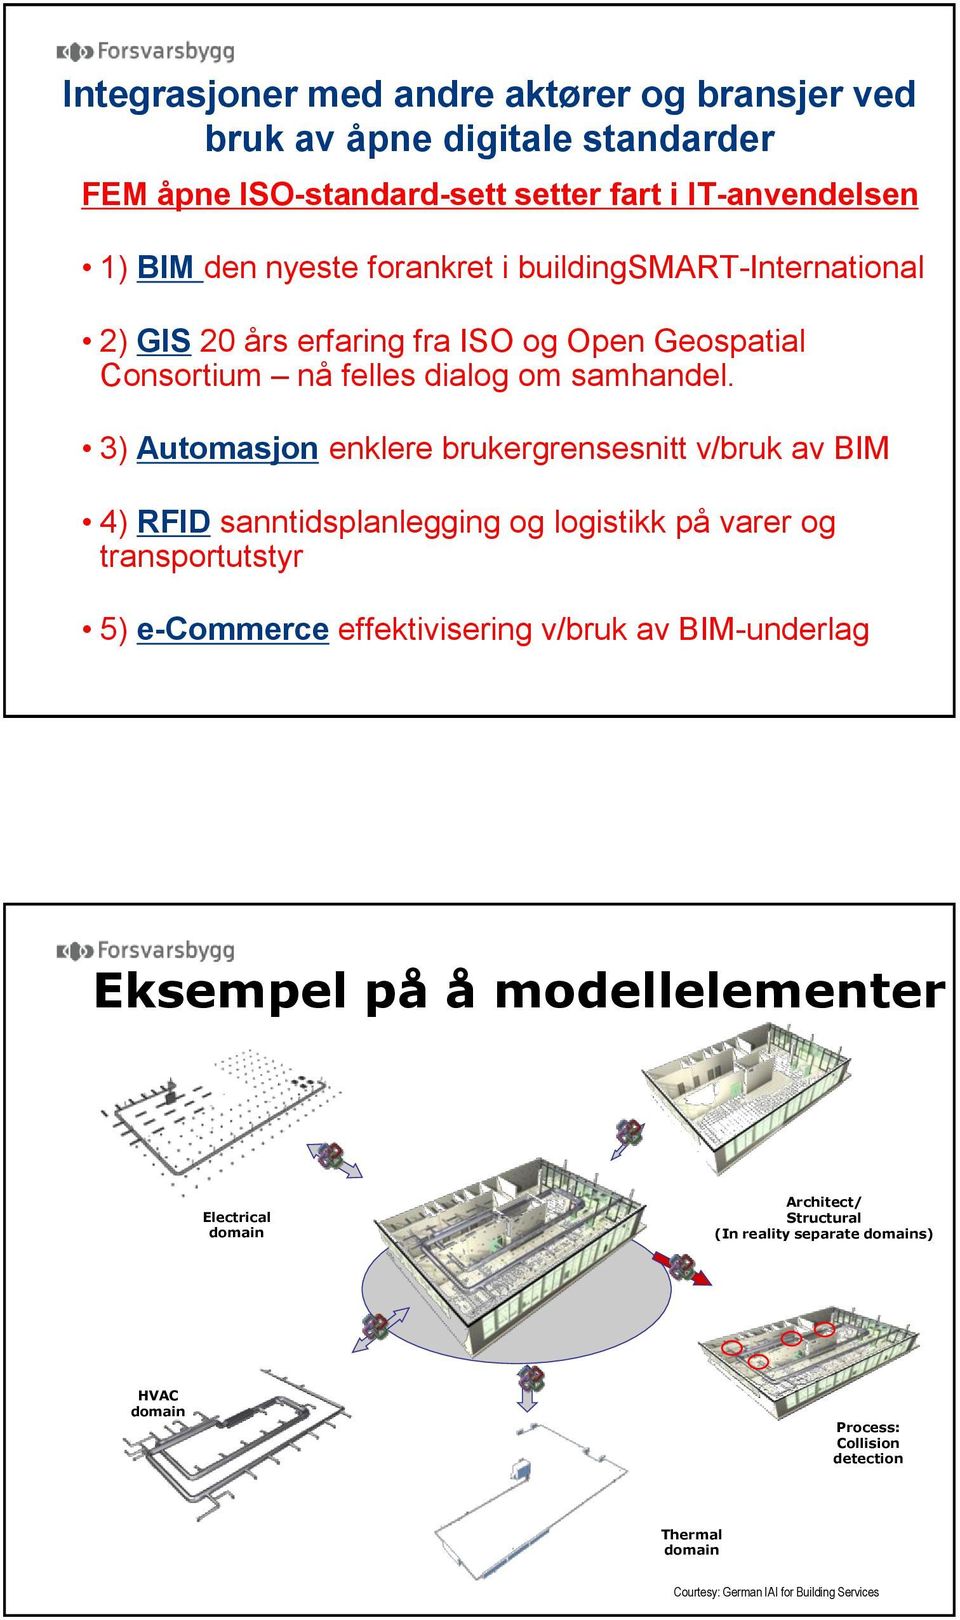 3) Automasjon enklere brukergrensesnitt v/bruk av BIM 4) RFID sanntidsplanlegging og logistikk på varer og transportutstyr 5) e-commerce effektivisering v/bruk av